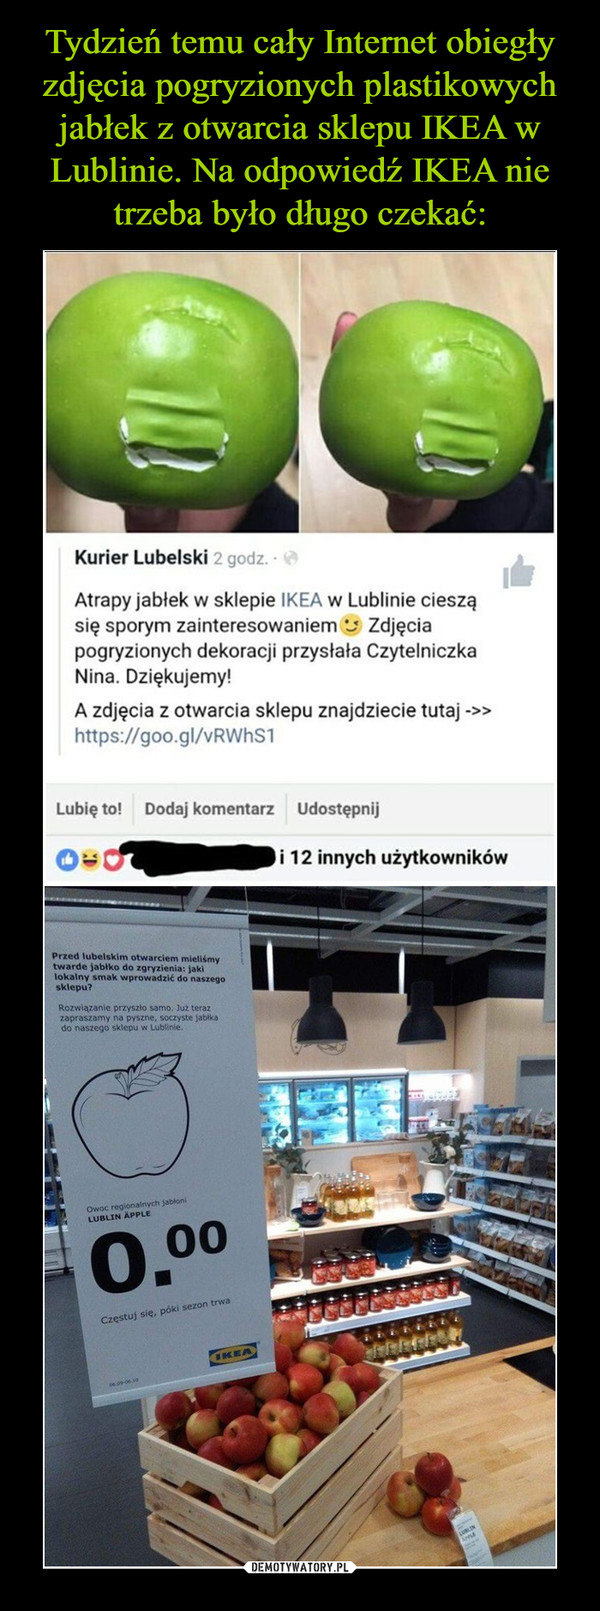  –  Kurier Lubelski Atrapy jabłek w sklepie i IKEA w Lublinie cieszą się sporym zainteresowaniem i Zdjęcia pogryzionych dekoracji przysłała Czytelniczka Nina. Dziękujemy! A zdjęcia z otwarcia sklepu znajdziecie tutaj 